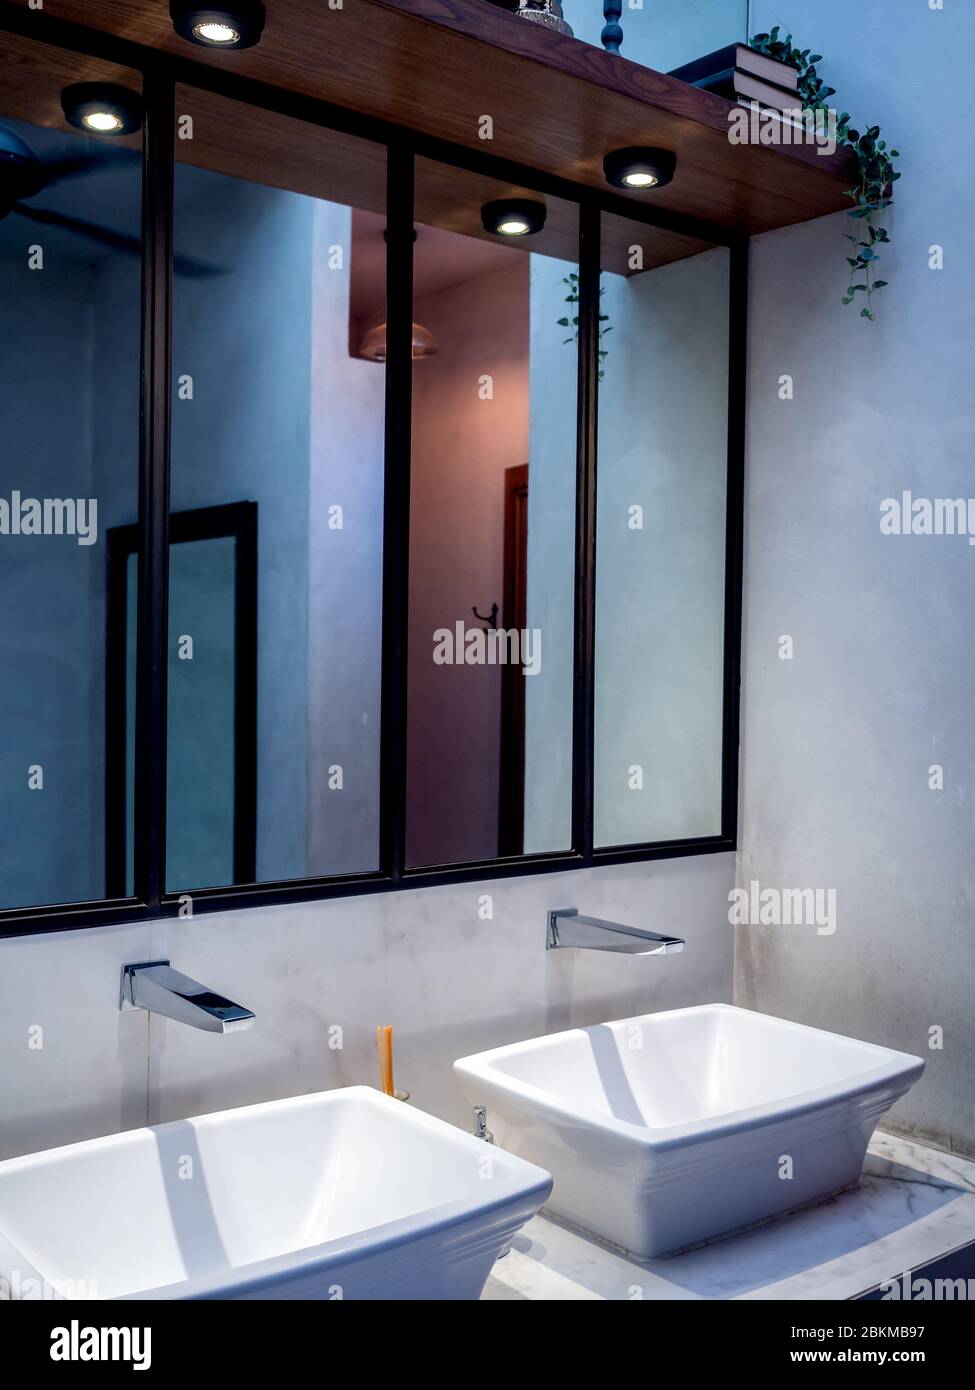 Lavabo e rubinetto bianchi moderni con specchio alto, downlight e decorazione di scaffali in legno su pareti in cemento in bagno, stile verticale. Foto Stock